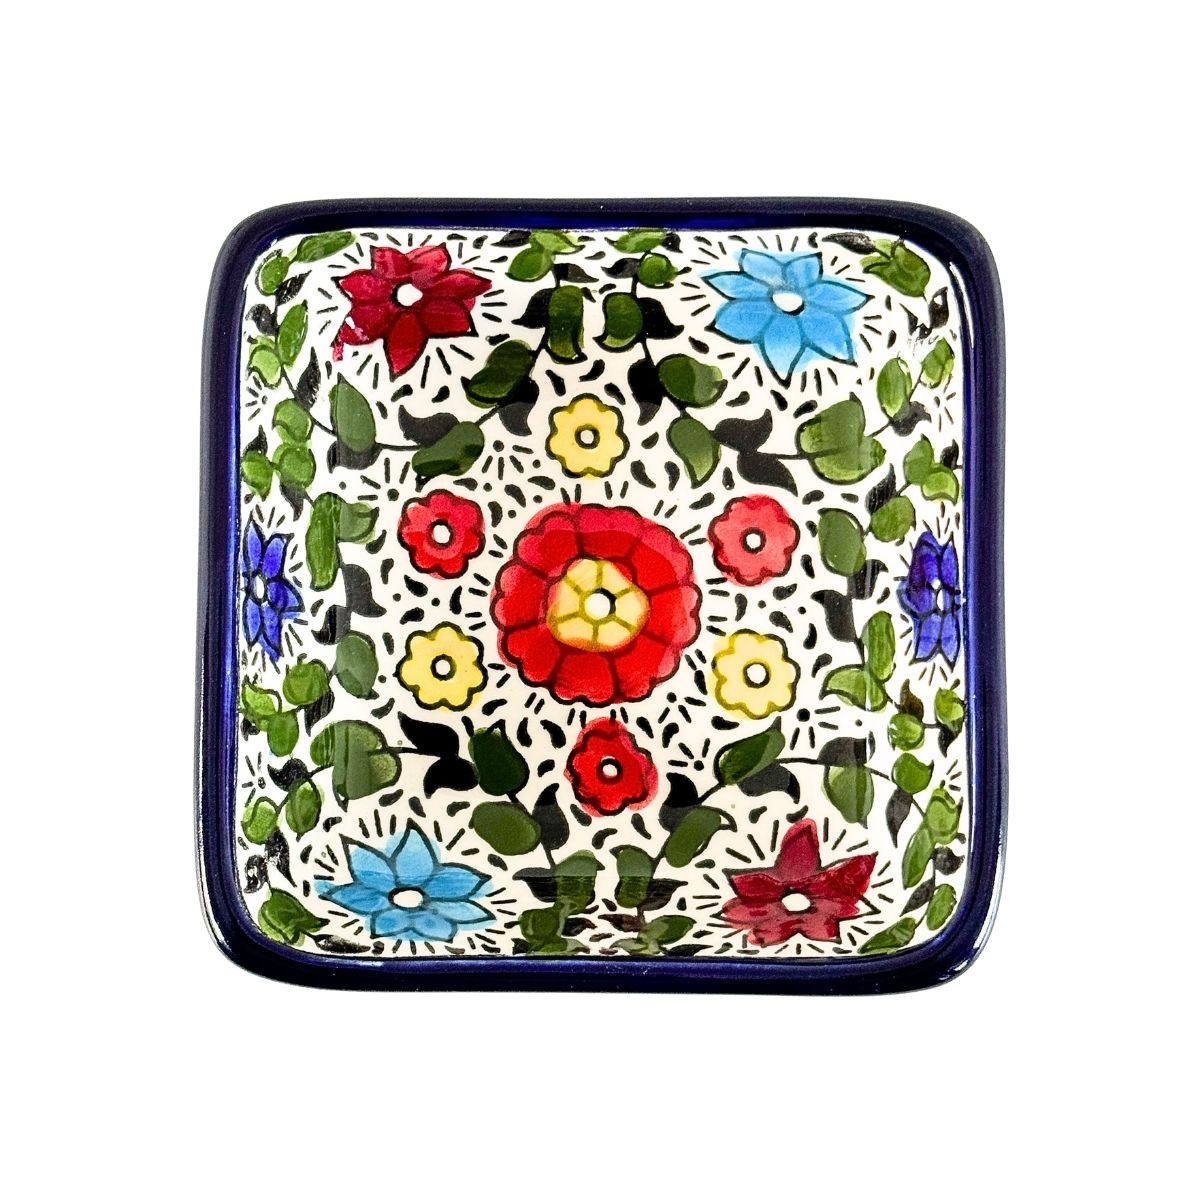 Ceramic Square Dish (4”) - Multicolor Vines